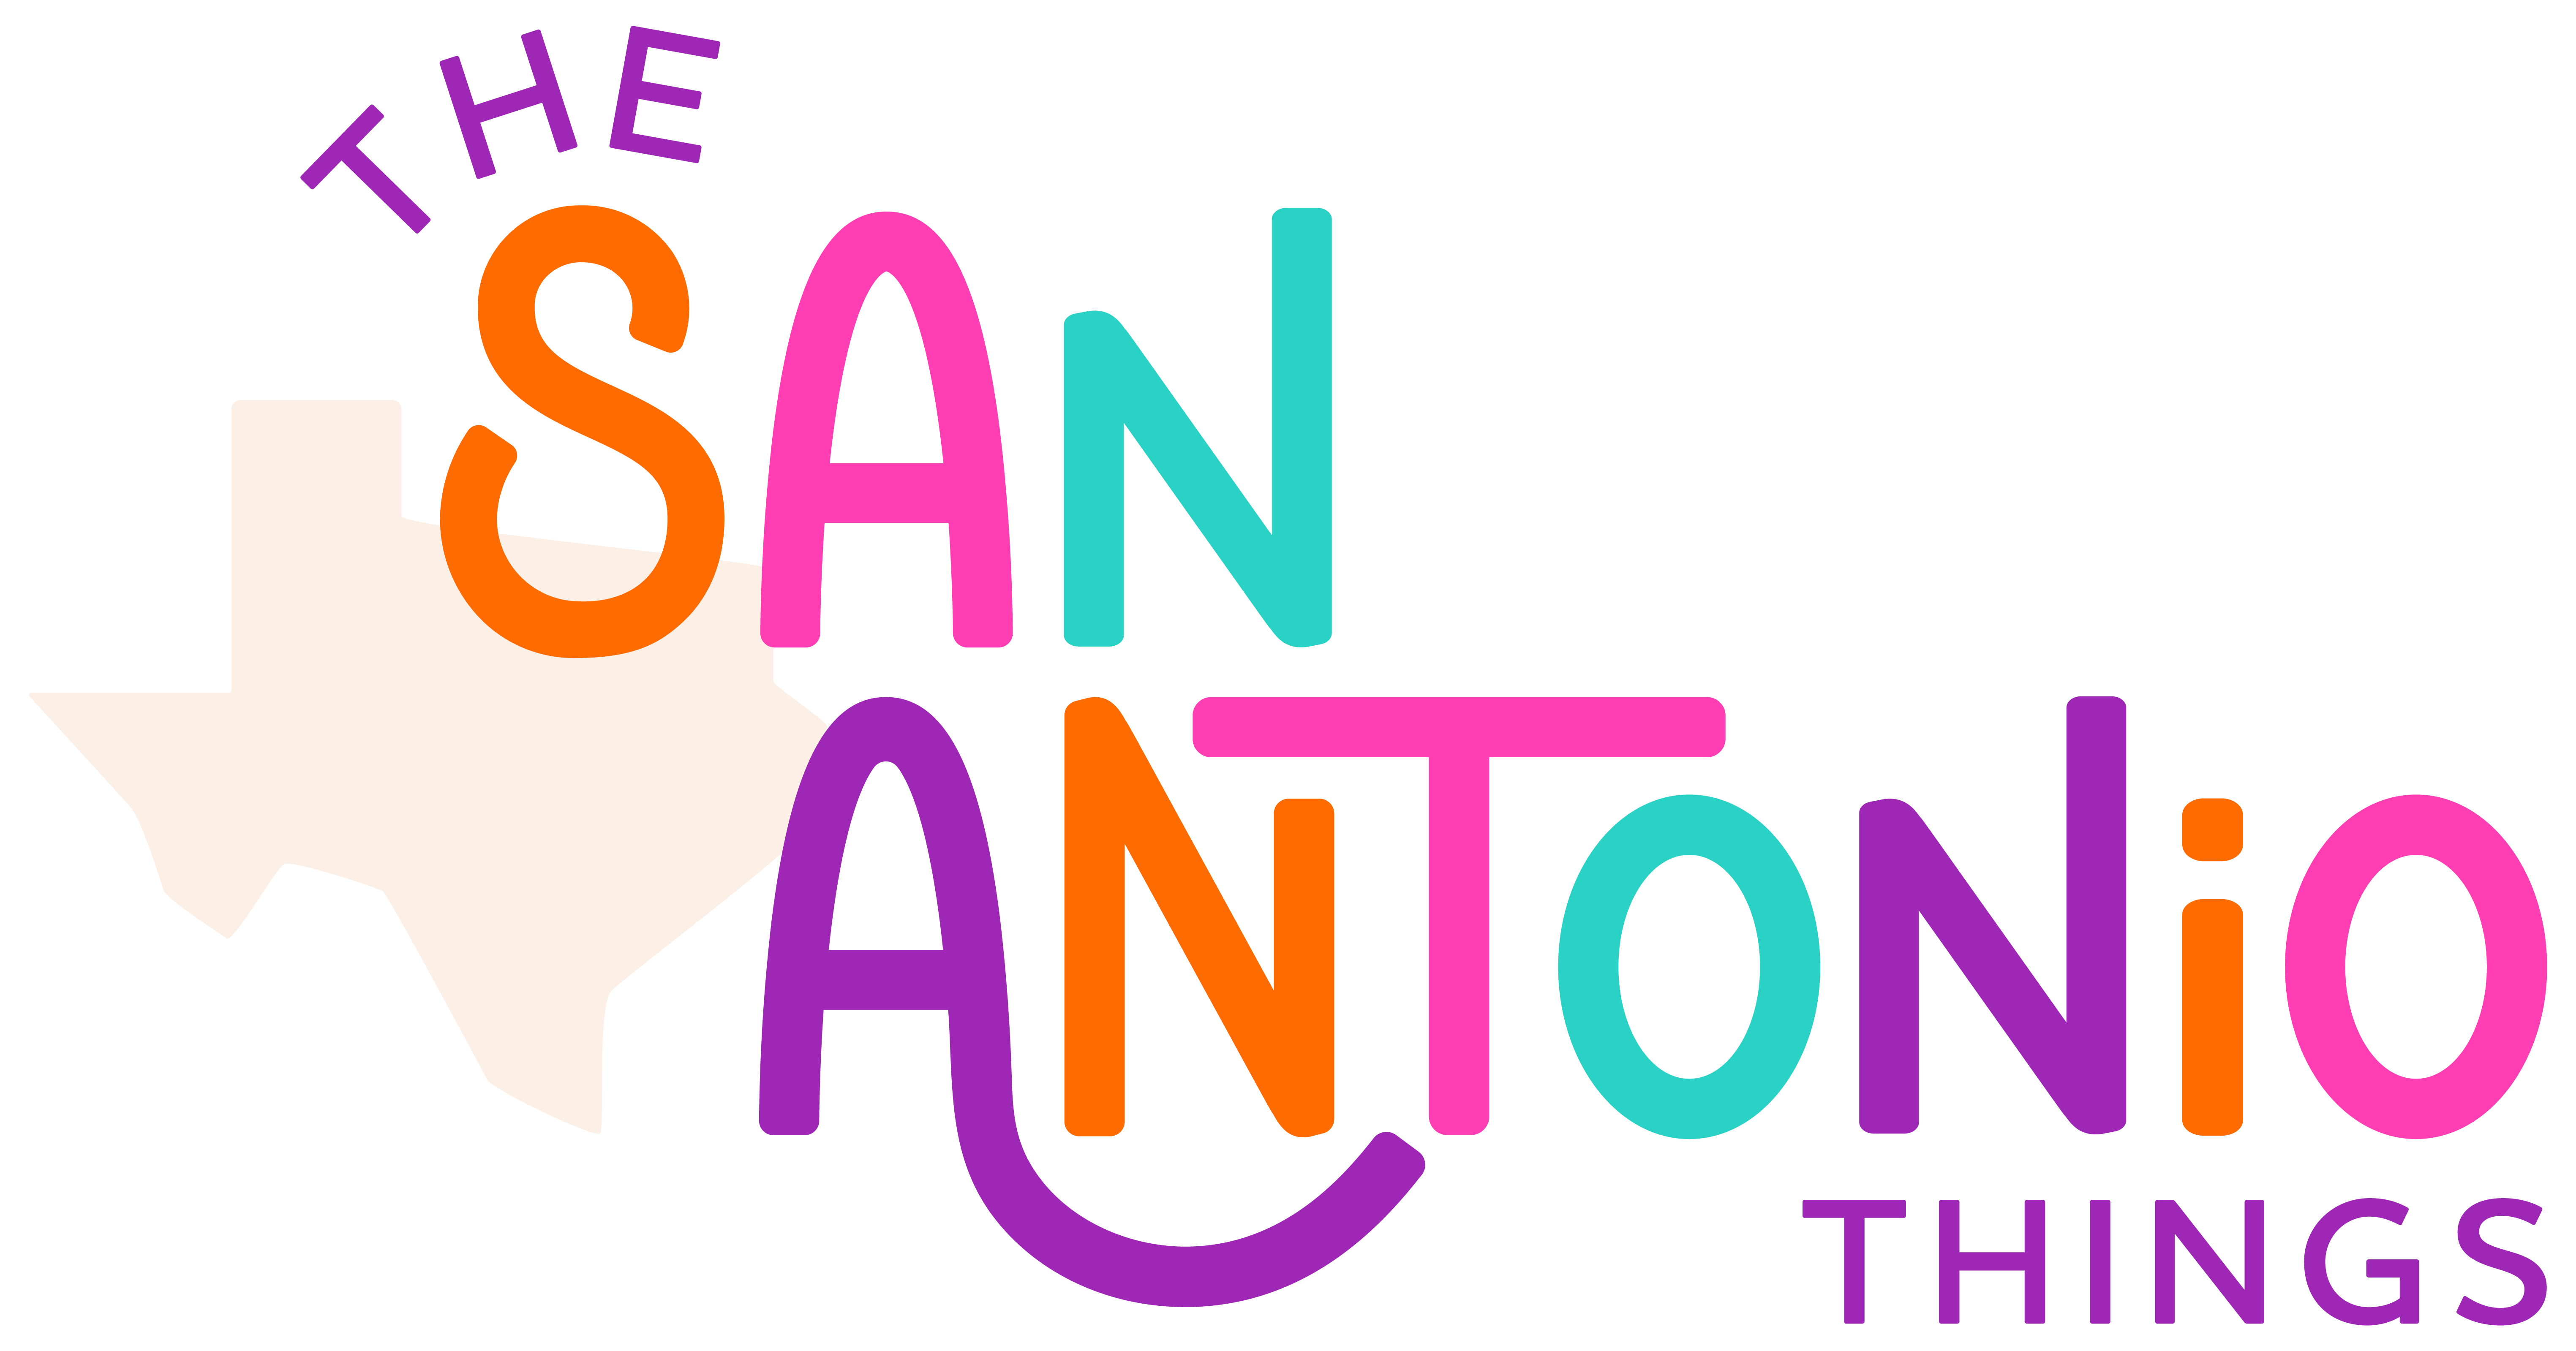 The San Antonio Things